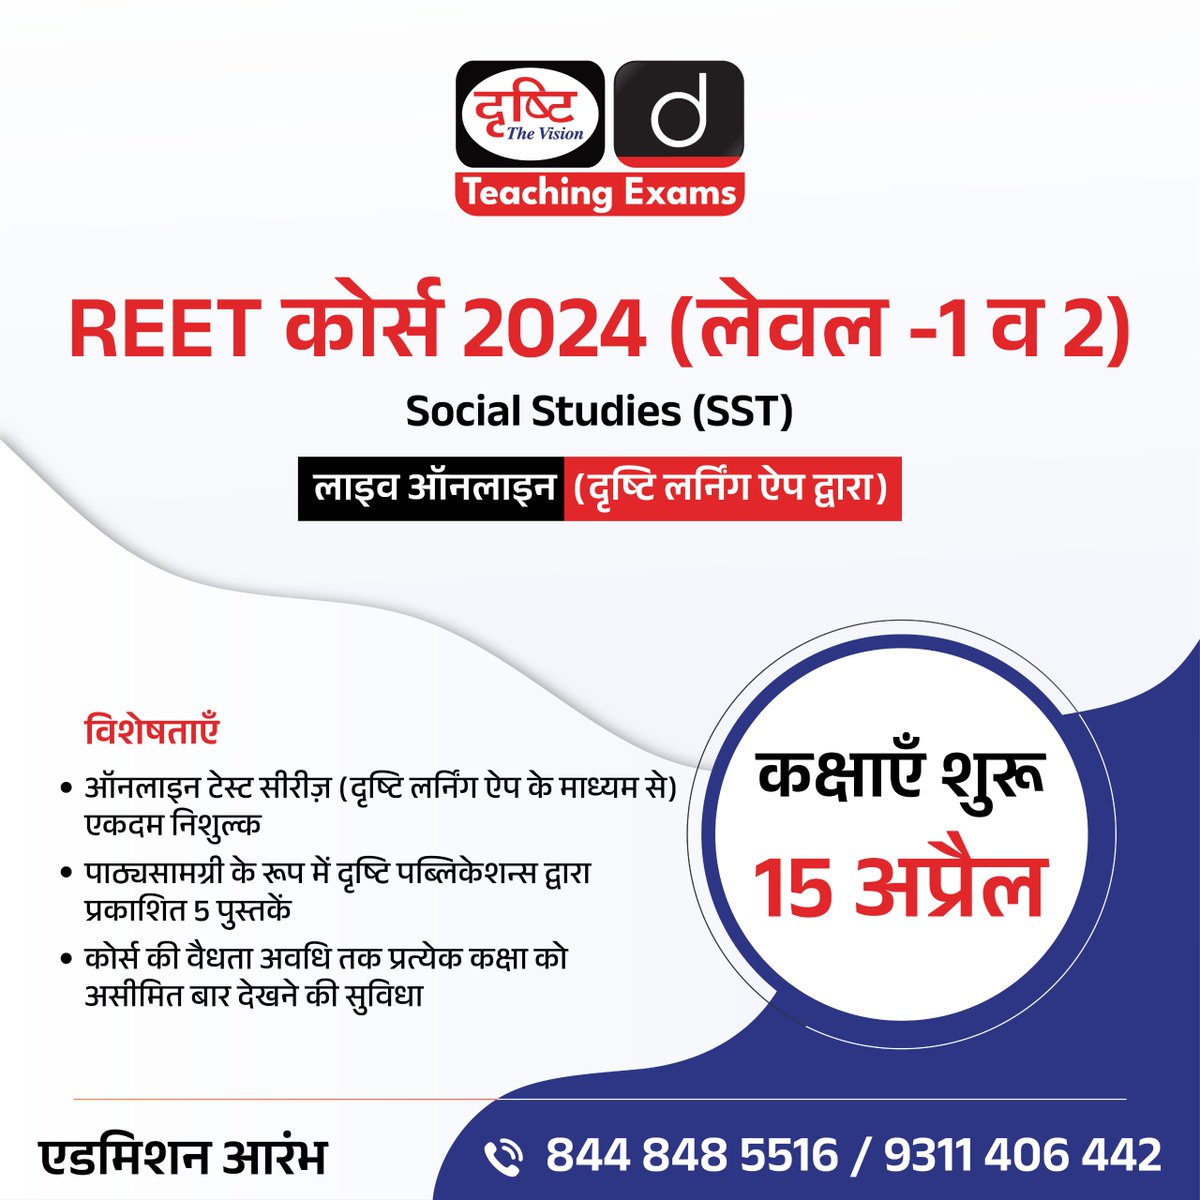 REET कोर्स 2024 (लेवल -1 व 2)

Social Studies (SST)

लाइव ऑनलाइन (दृष्टि लर्निंग ऐप द्वारा)

एडमिशन आरंभ

अधिक जानकारी के लिये क्लिक करें इस लिंक पर: drishti.xyz/REET-Level-1an…

#REET #SocialStudies #SST #Level1 #Level2 #DrishtiTeachingExams